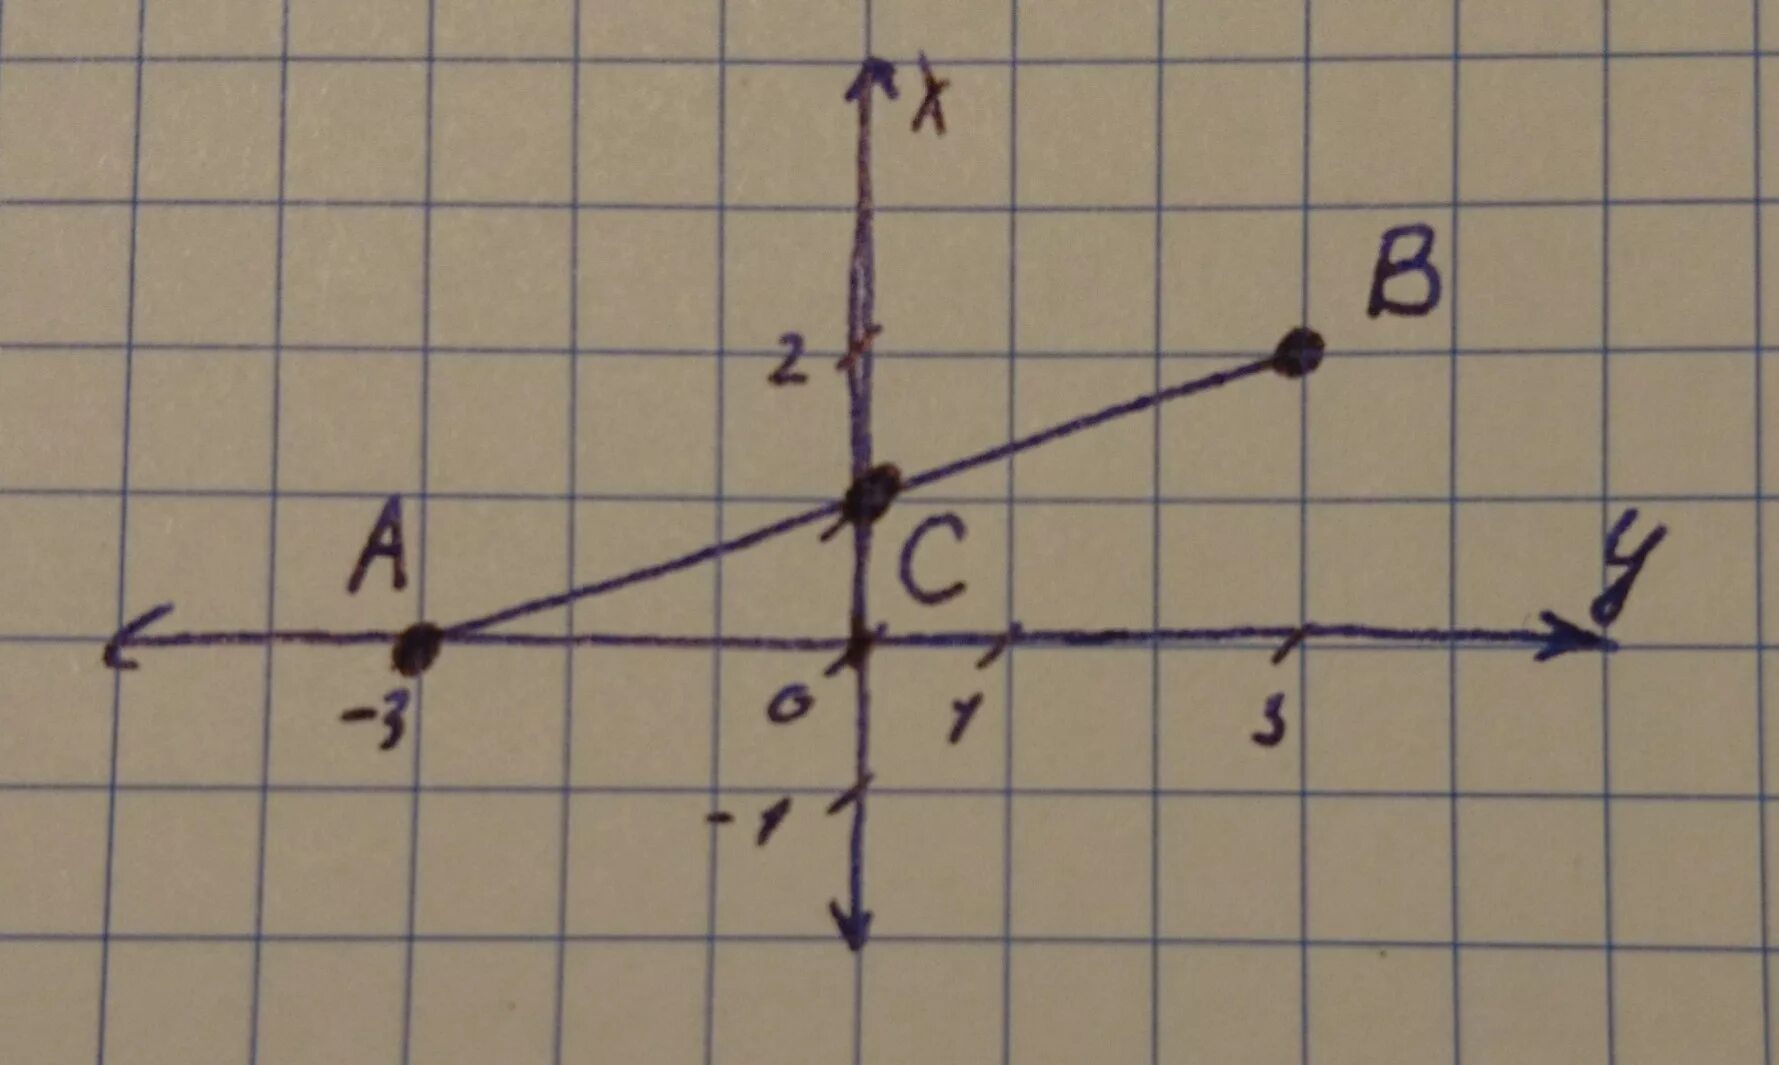 Отрезок на координатной плоскости. Середина отрезка на координатной плоскости. Самолет на координатной плоскости. Коордигаты точки p(-37п/3).